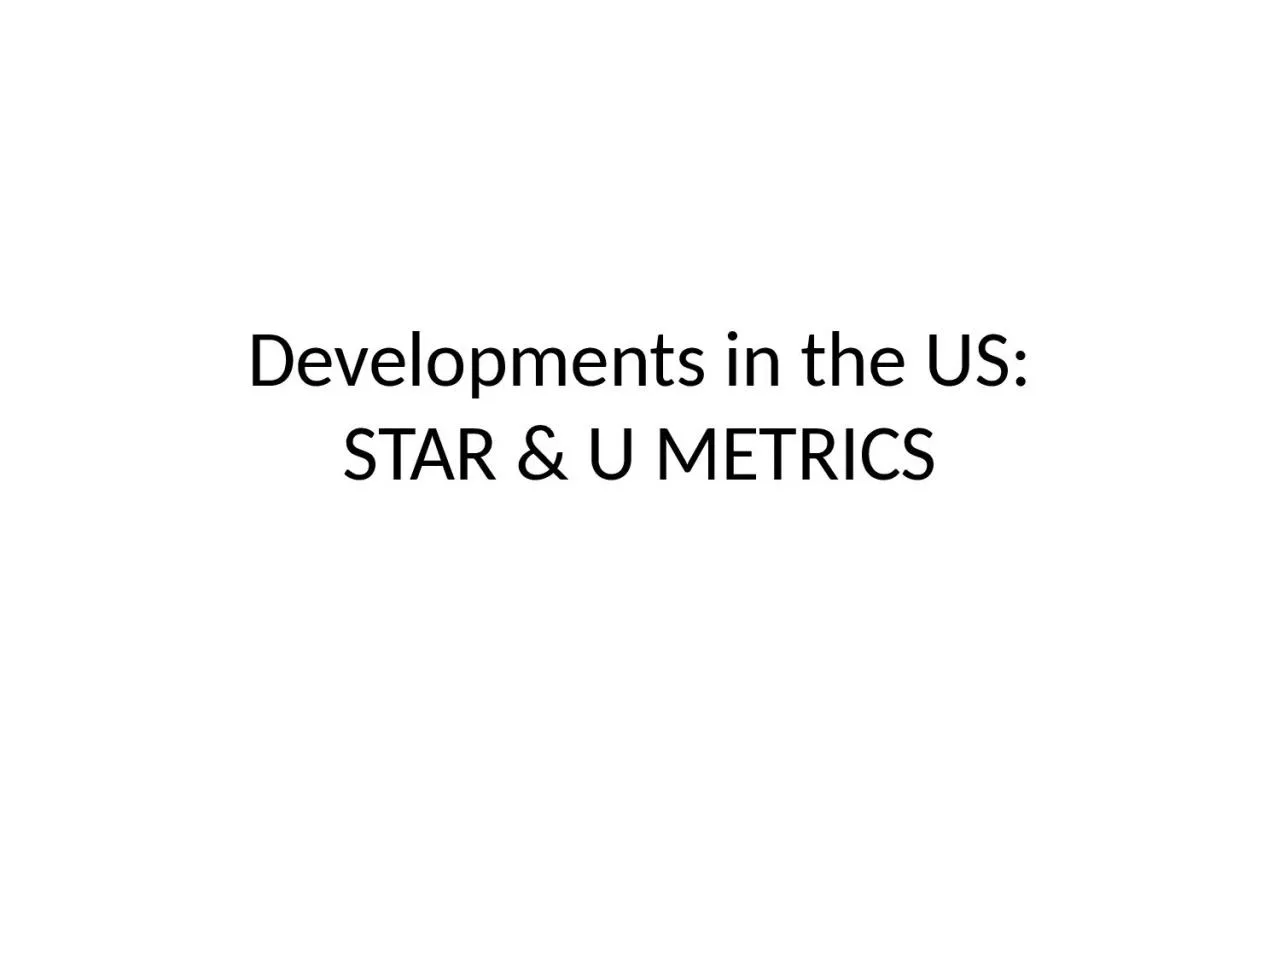 Developments in the US: STAR & U METRICS